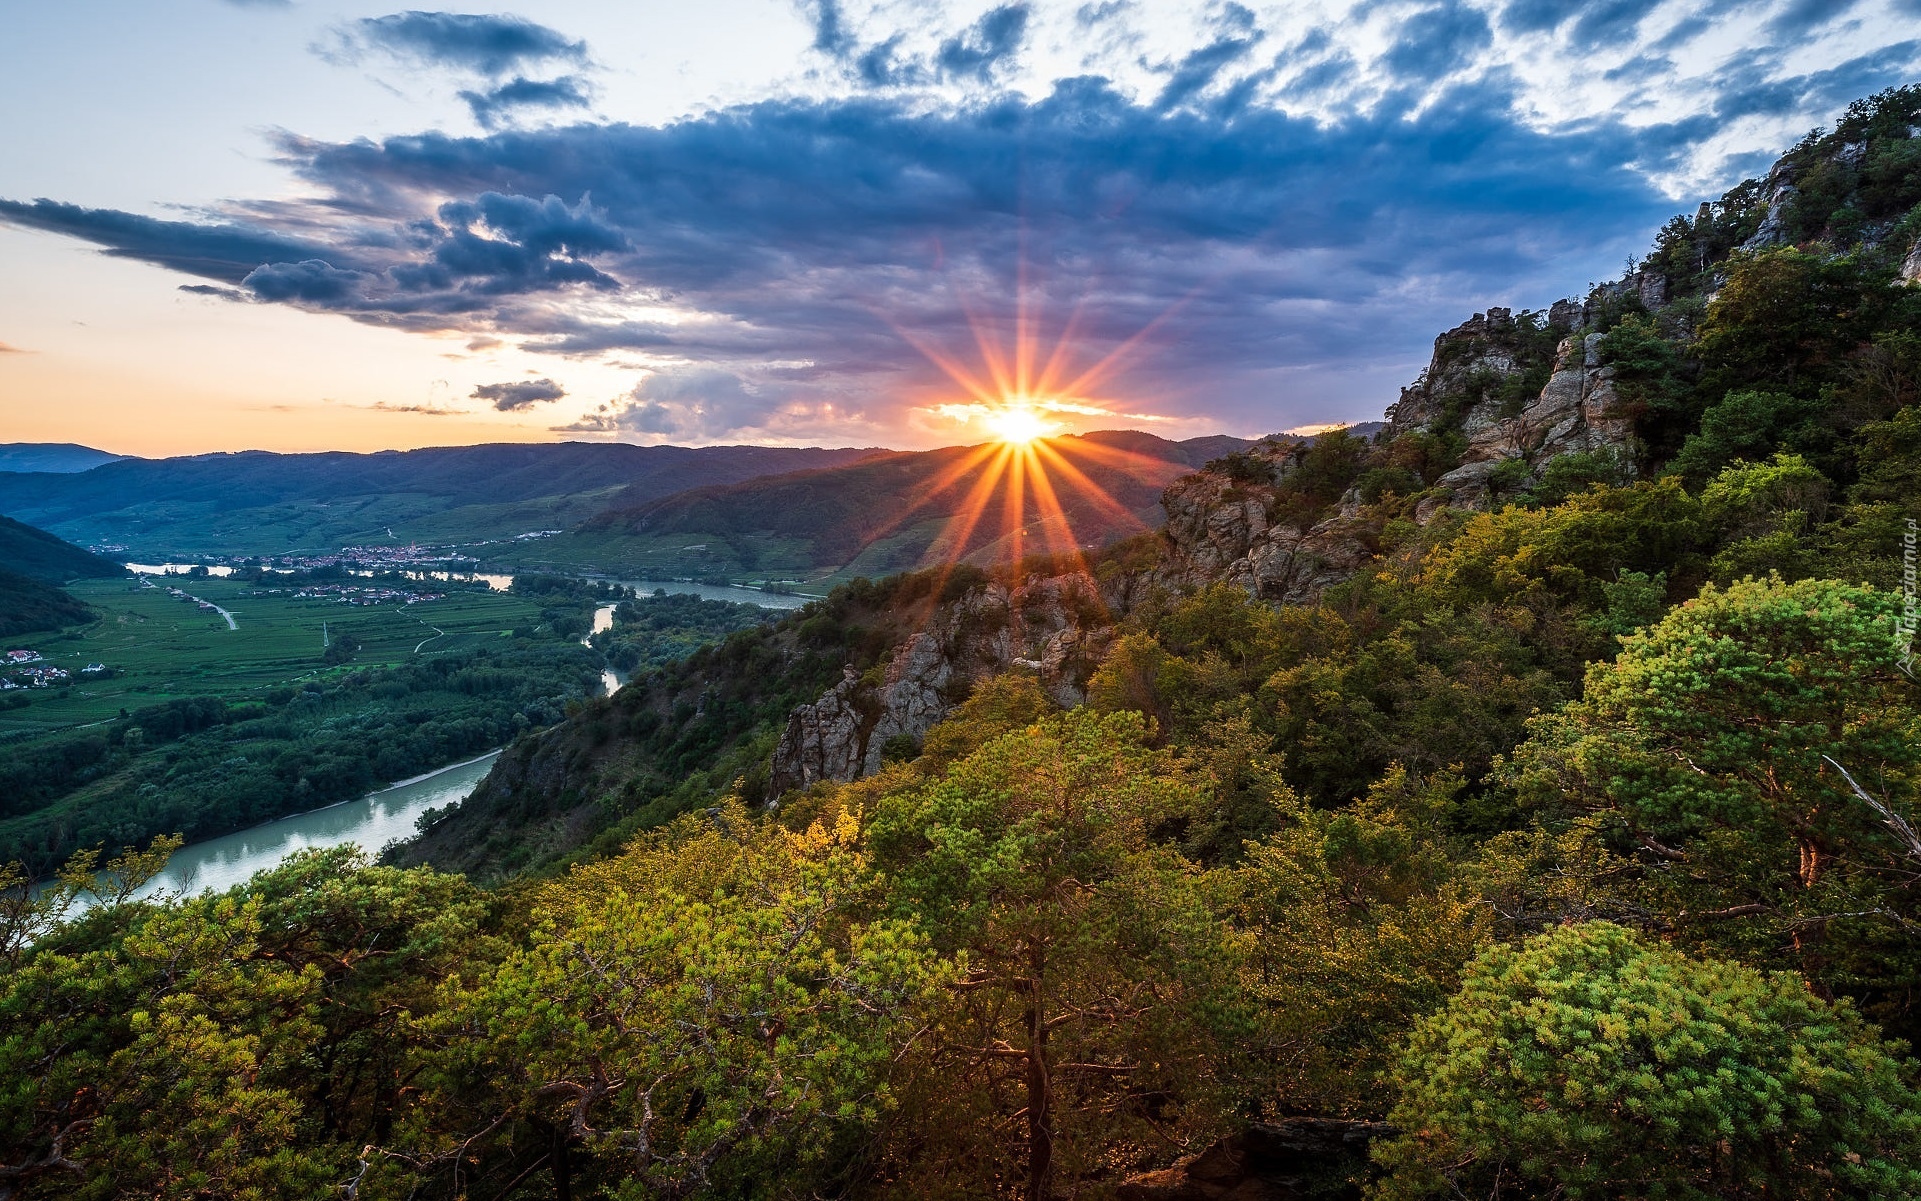 Góry, Rzeka Dunaj, Dolina Wachau, Drzewa, Krzewy, Promienie, Zachód słońca, Chmury, Austria